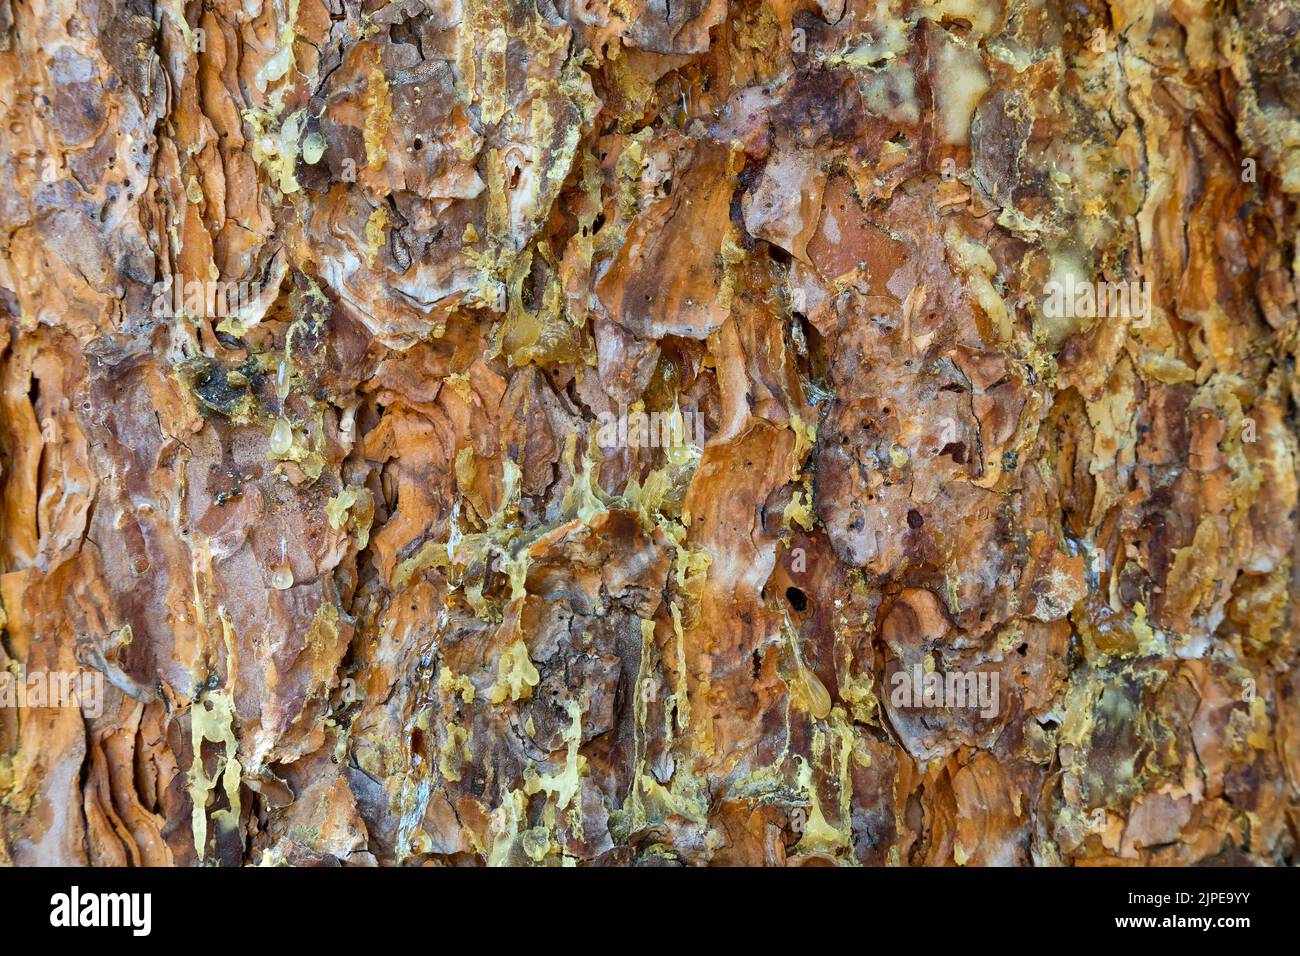 Pechuga de llorón, Infisión del escarabajo de corteza de pino 'Dendroctonus ponderosae', Pino Ponderosa 'Pinus ponderosa'. Foto de stock